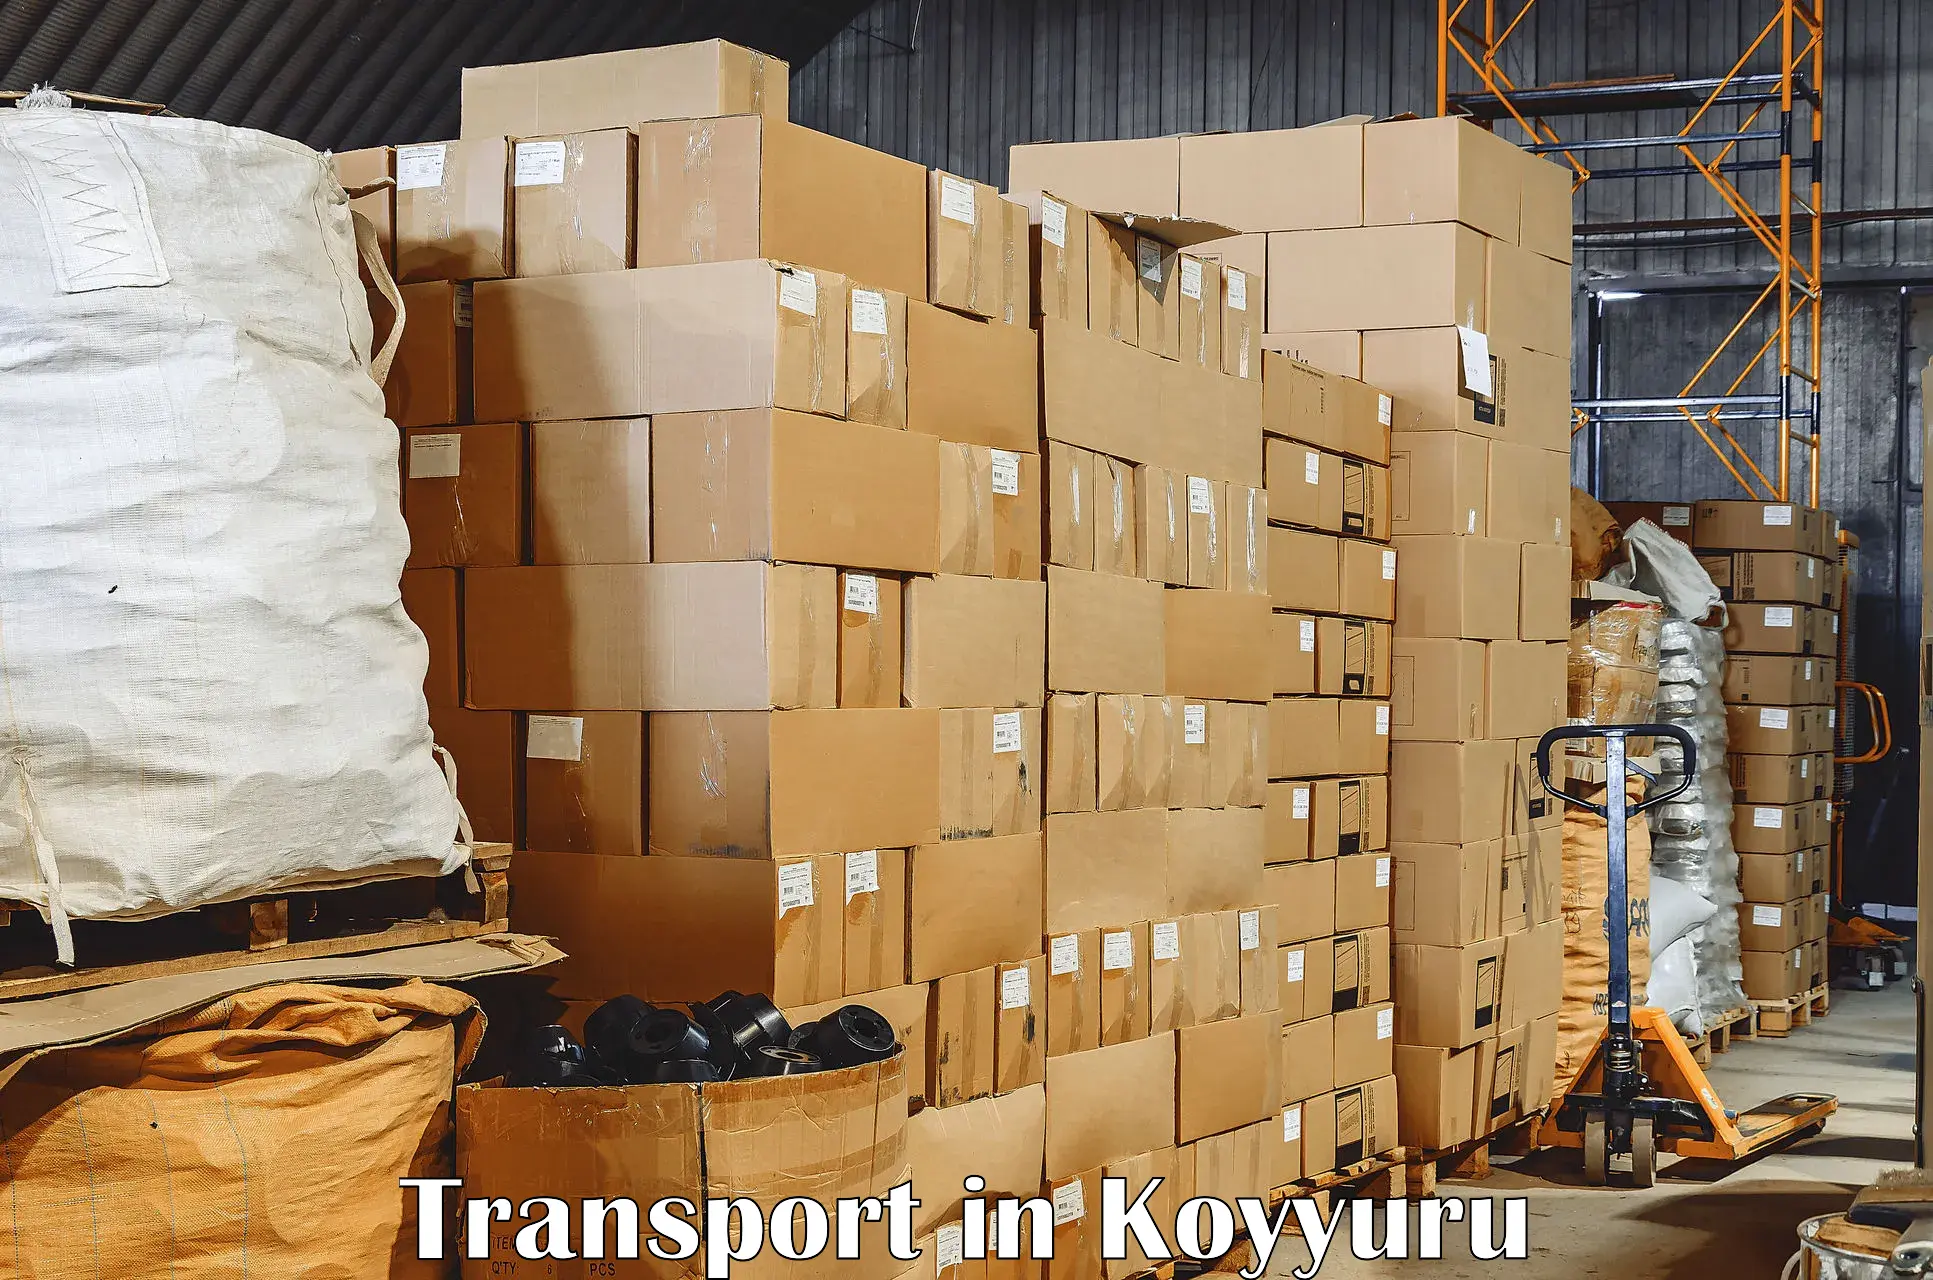 Vehicle transport services in Koyyuru